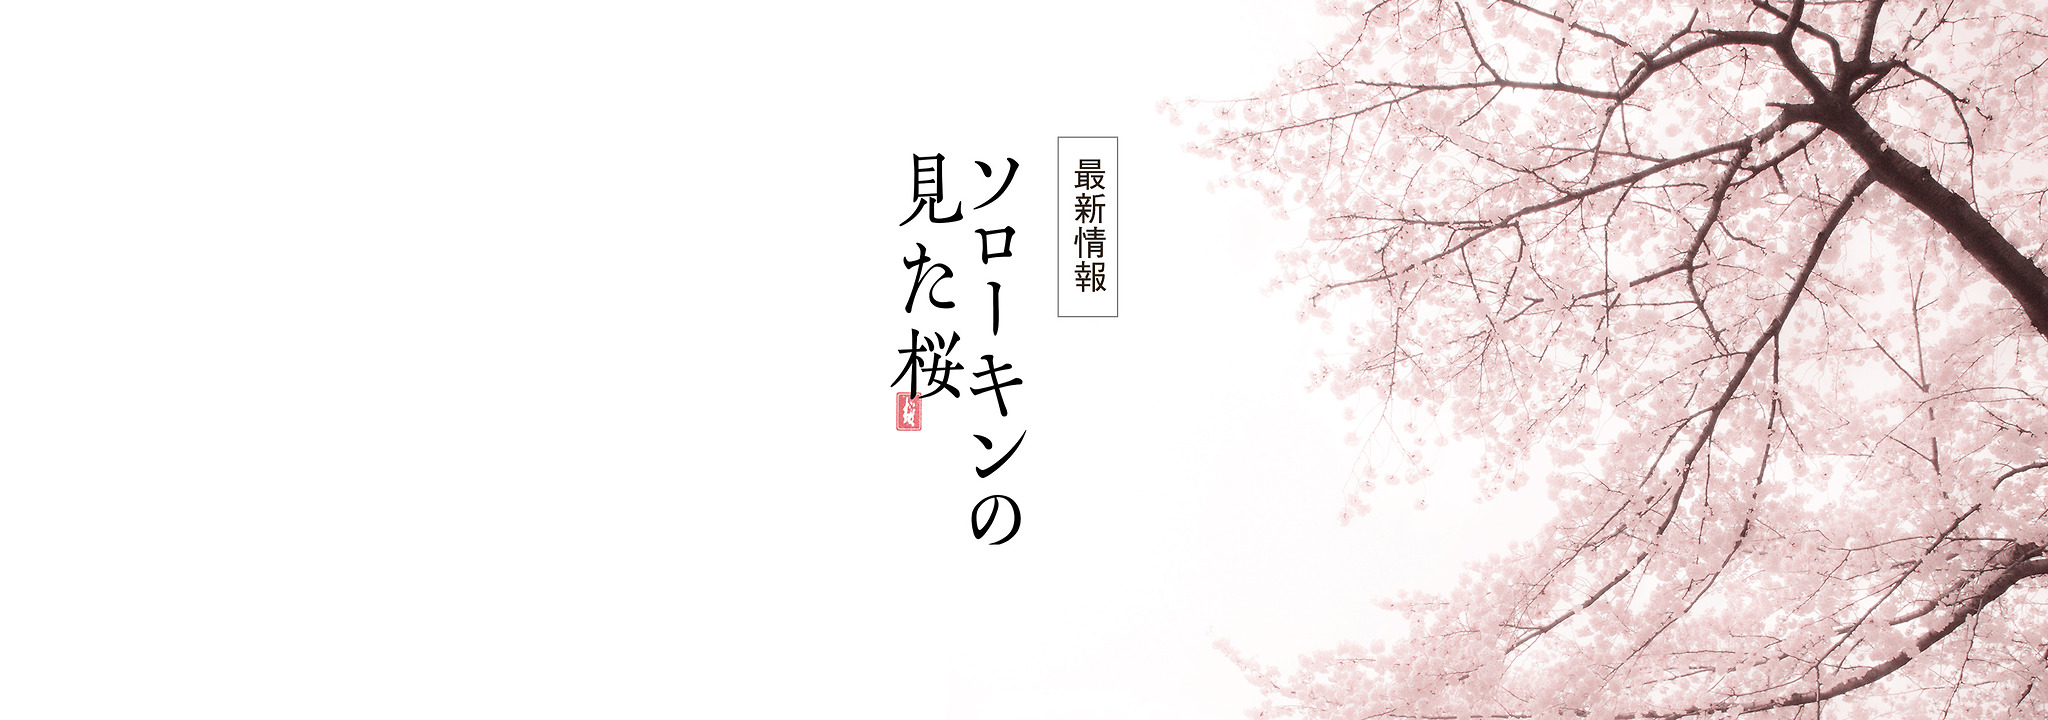 映画『ソローキンの見た桜』公式サイト原題”Вплену у сакуры”「桜にとらわれて」